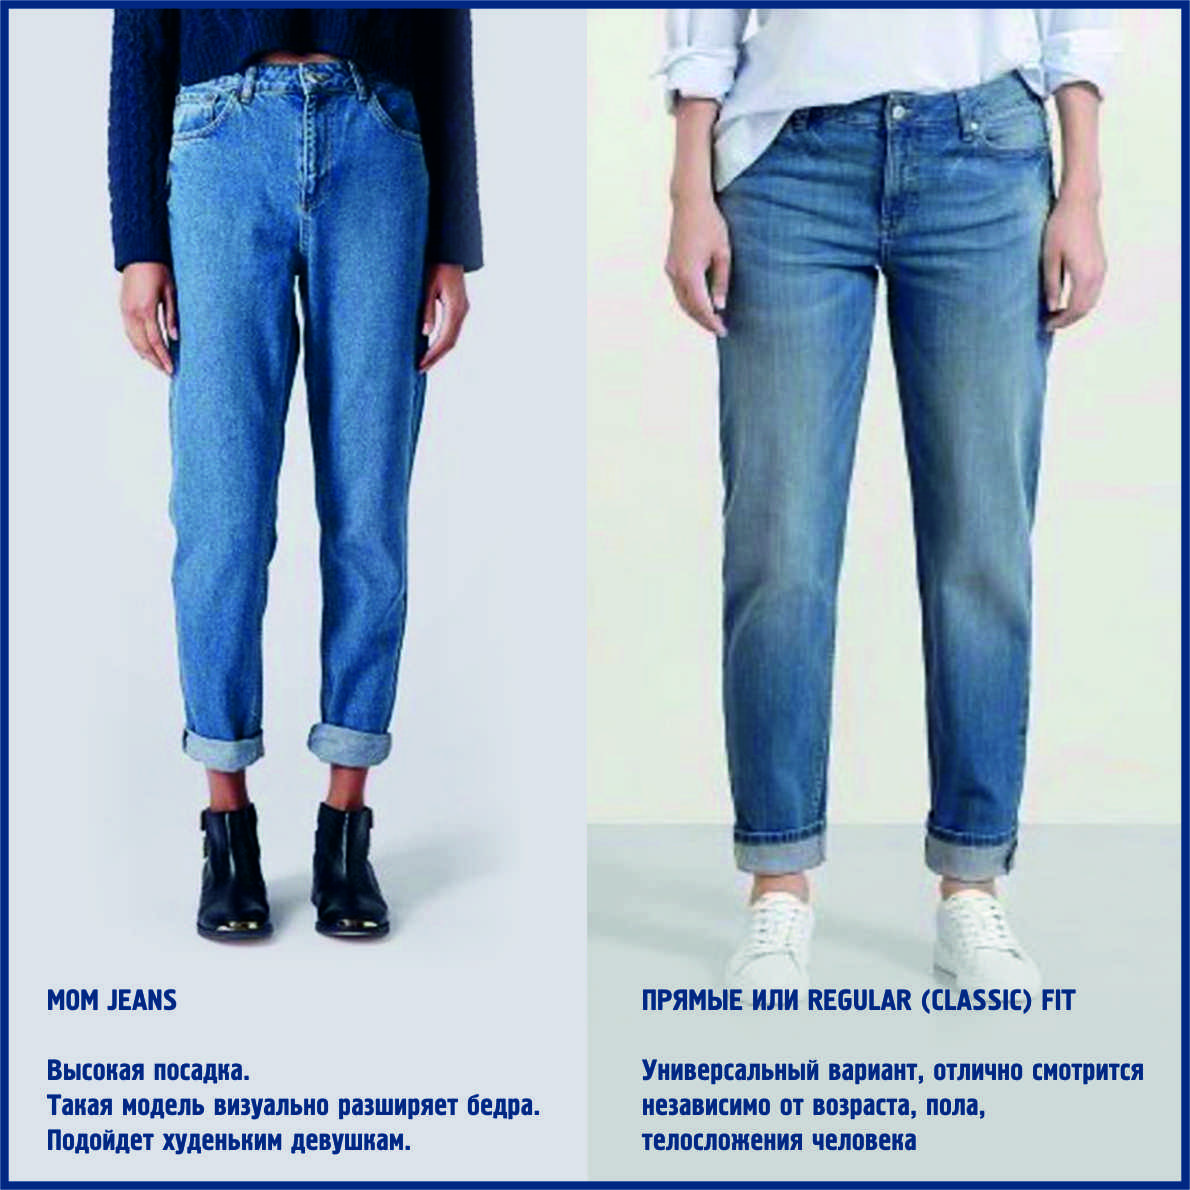 Как определить качество джинс — способы определения, какие лучше по качеству art-textil.ru